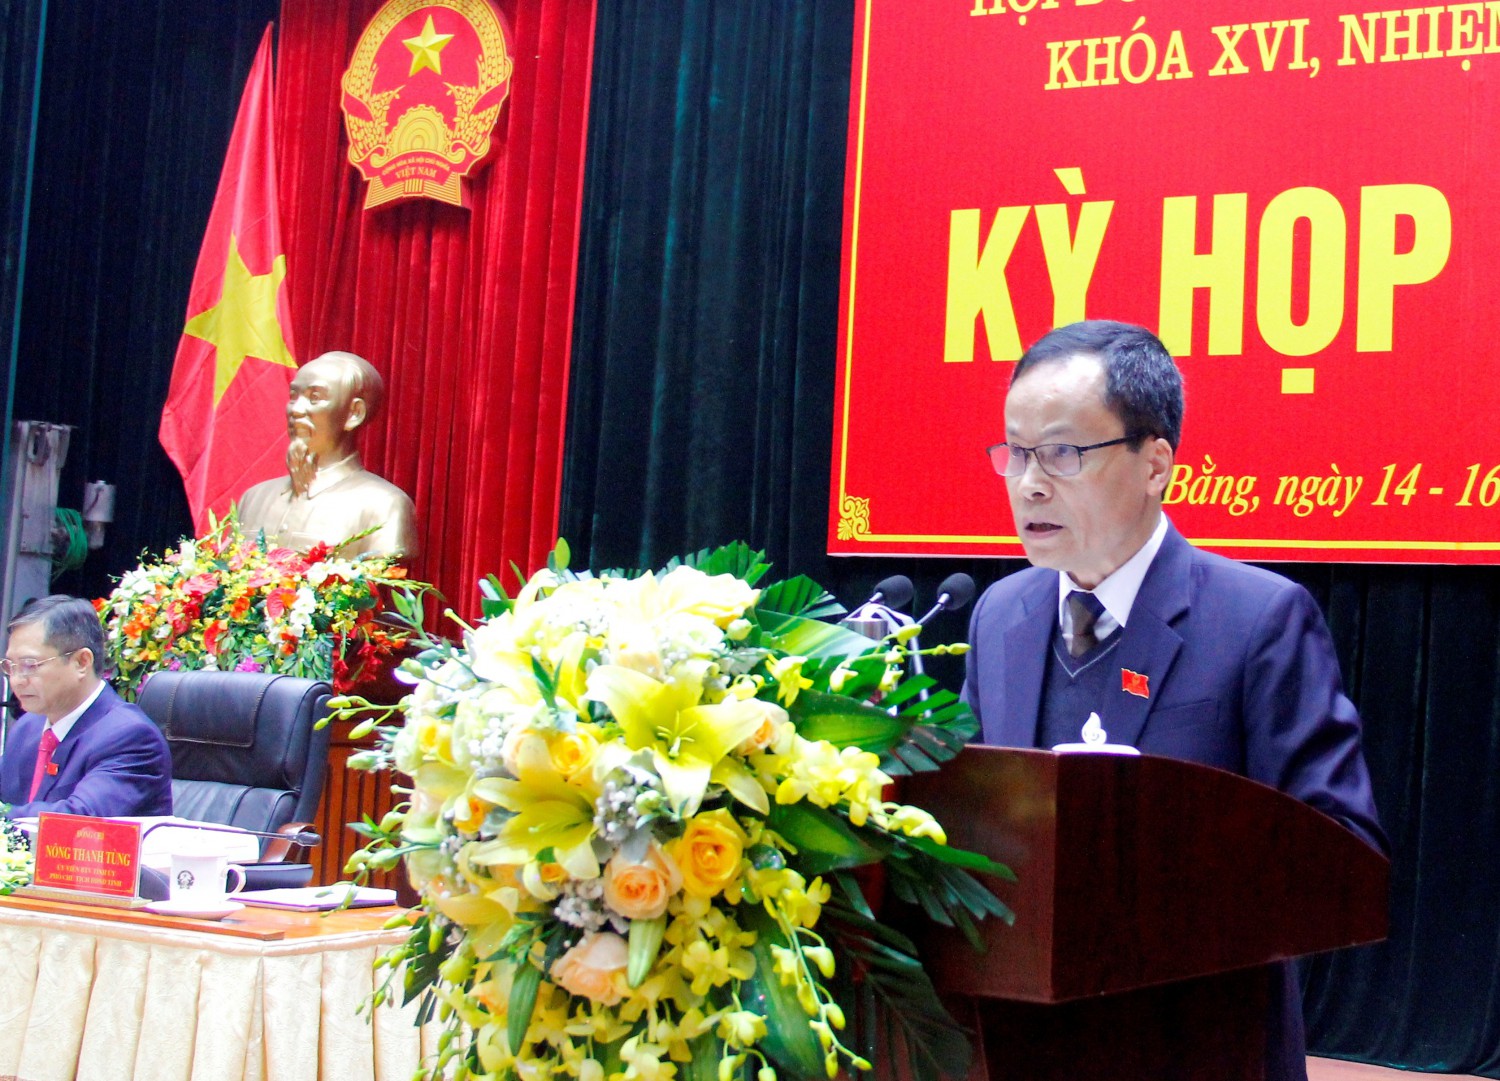 (Trích bài phát biểu Khai mạc thứ 15, của đồng chí Nông Thanh Tùng, Ủy viên Ban Thường vụ Tỉnh ủy, Phó Chủ tịch phụ trách HĐND tỉnh)